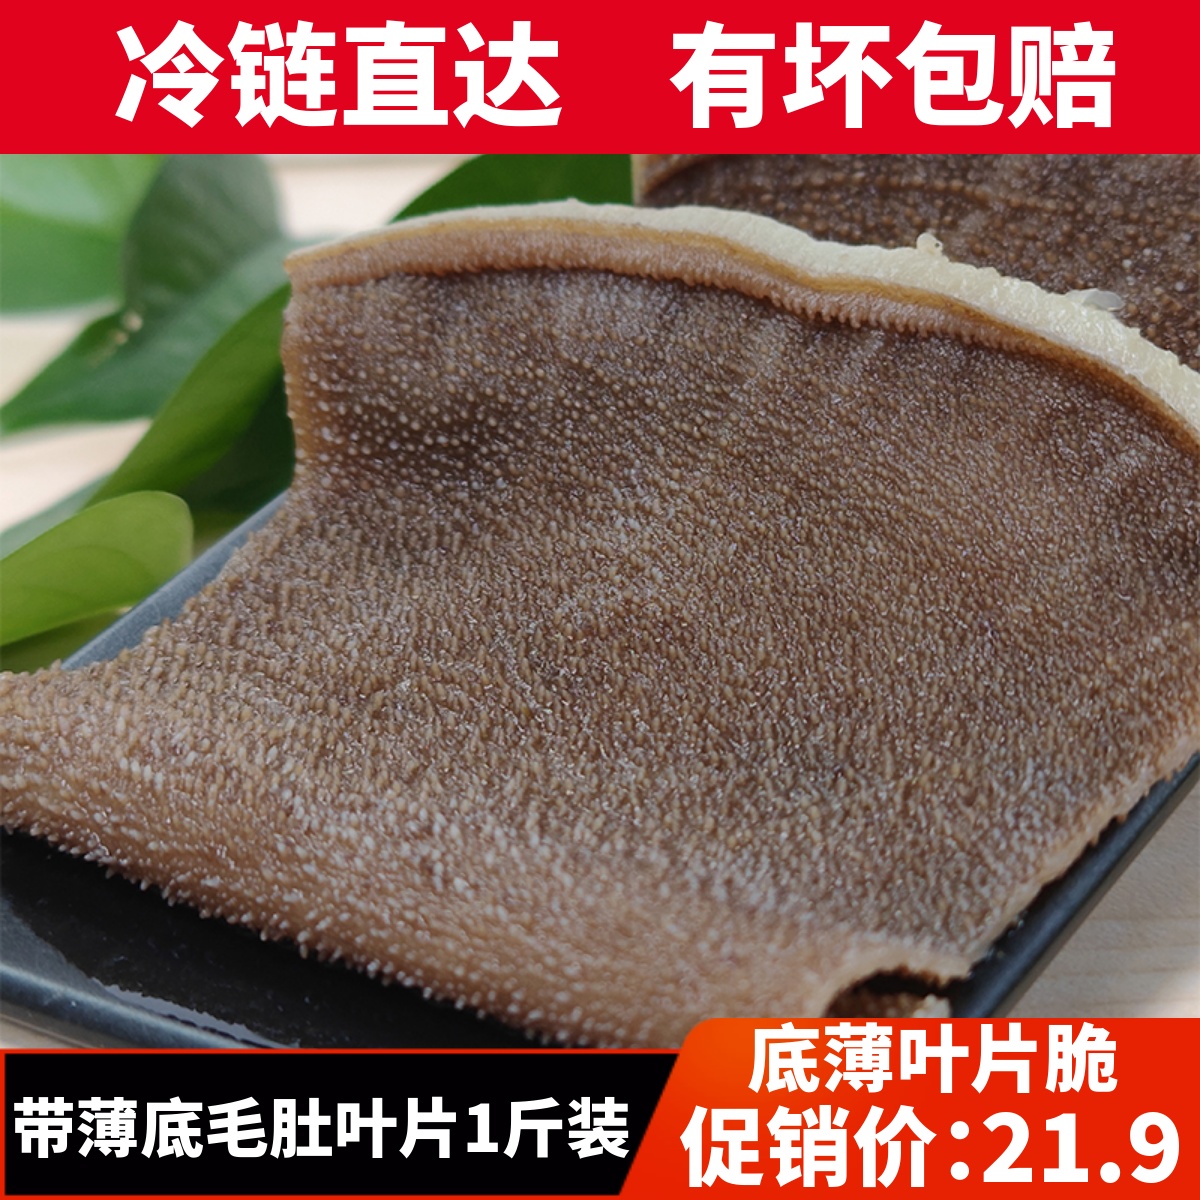 毛肚叶片带底板5斤装新鲜牛百叶重庆火锅冒菜串串商用家用食材